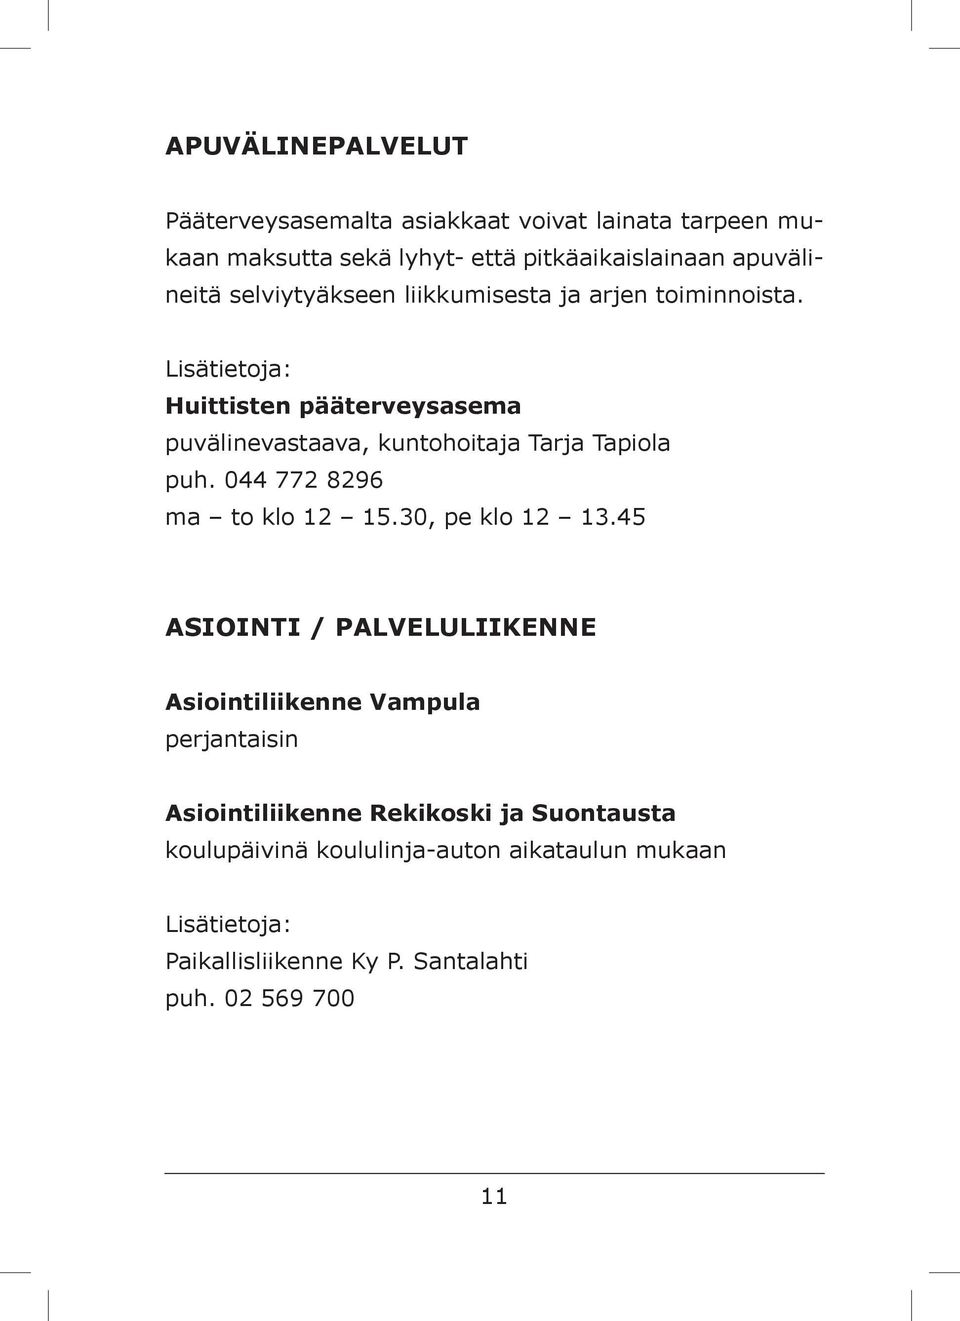 Huittisten pääterveysasema puvälinevastaava, kuntohoitaja Tarja Tapiola puh. 044 772 8296 ma to klo 12 15.30, pe klo 12 13.